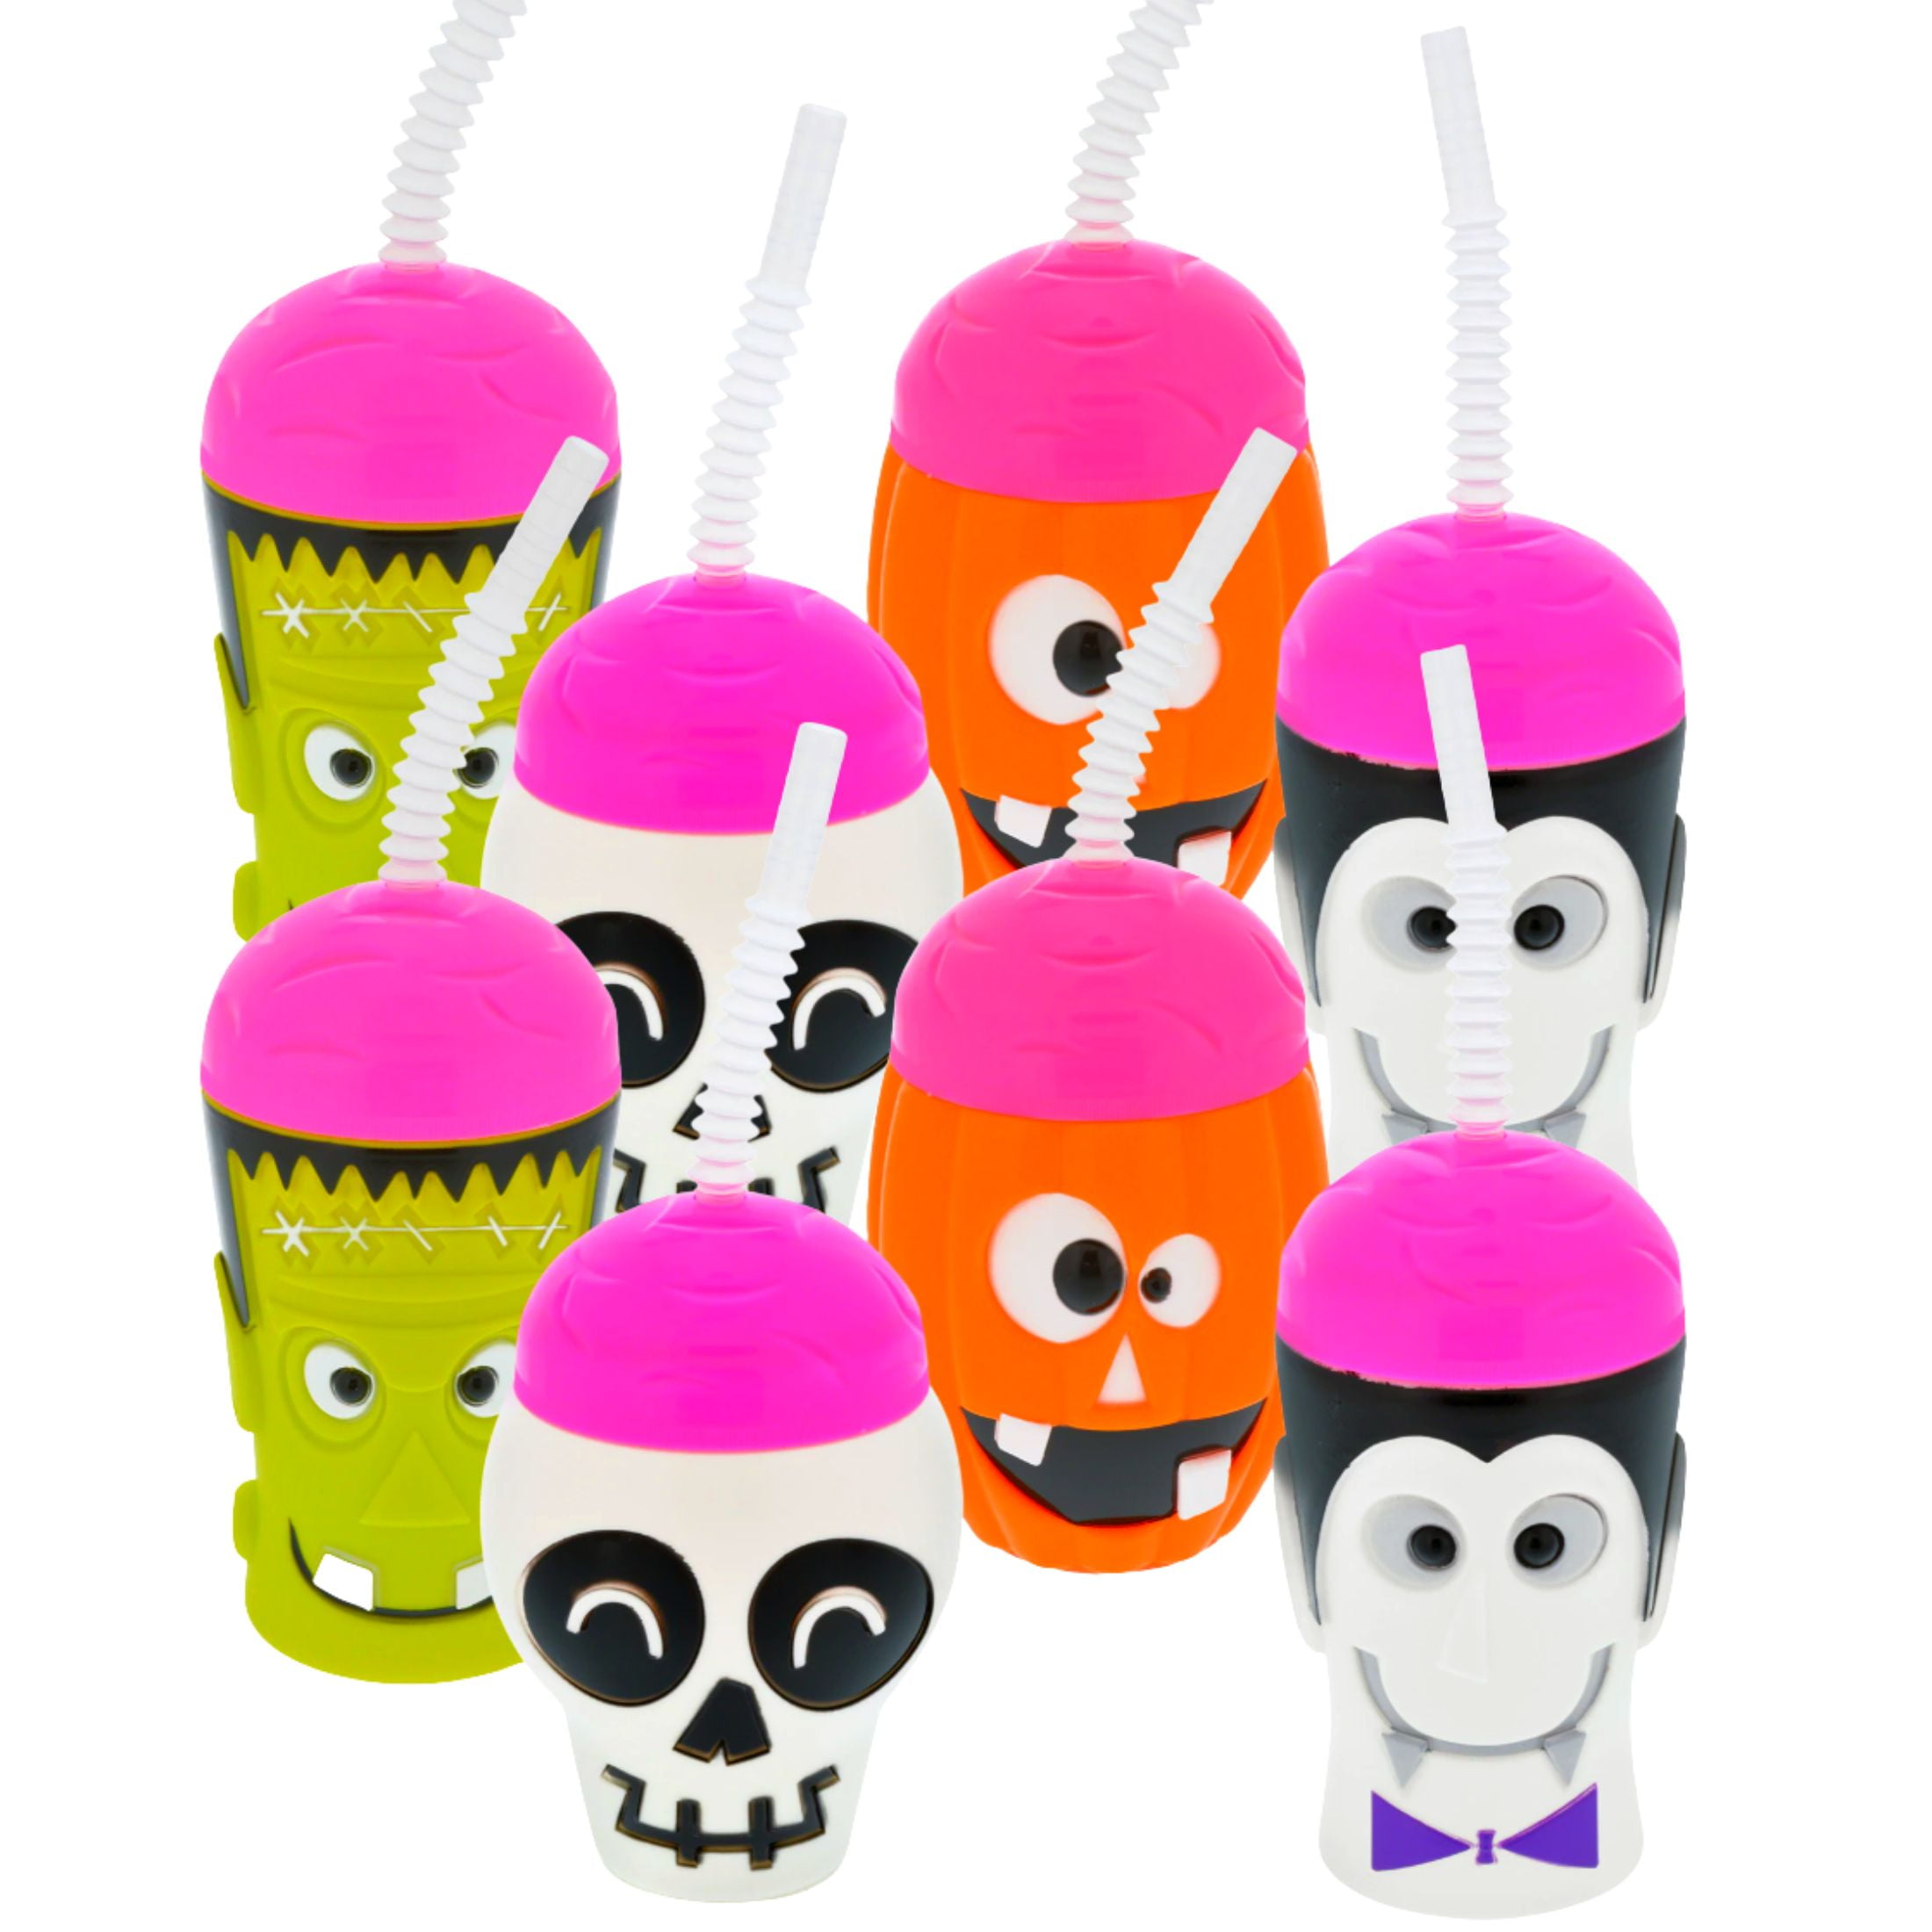 8 Halloween Plastic Reusable Mini Tumblers W/straws 13 oz Party Supplies New